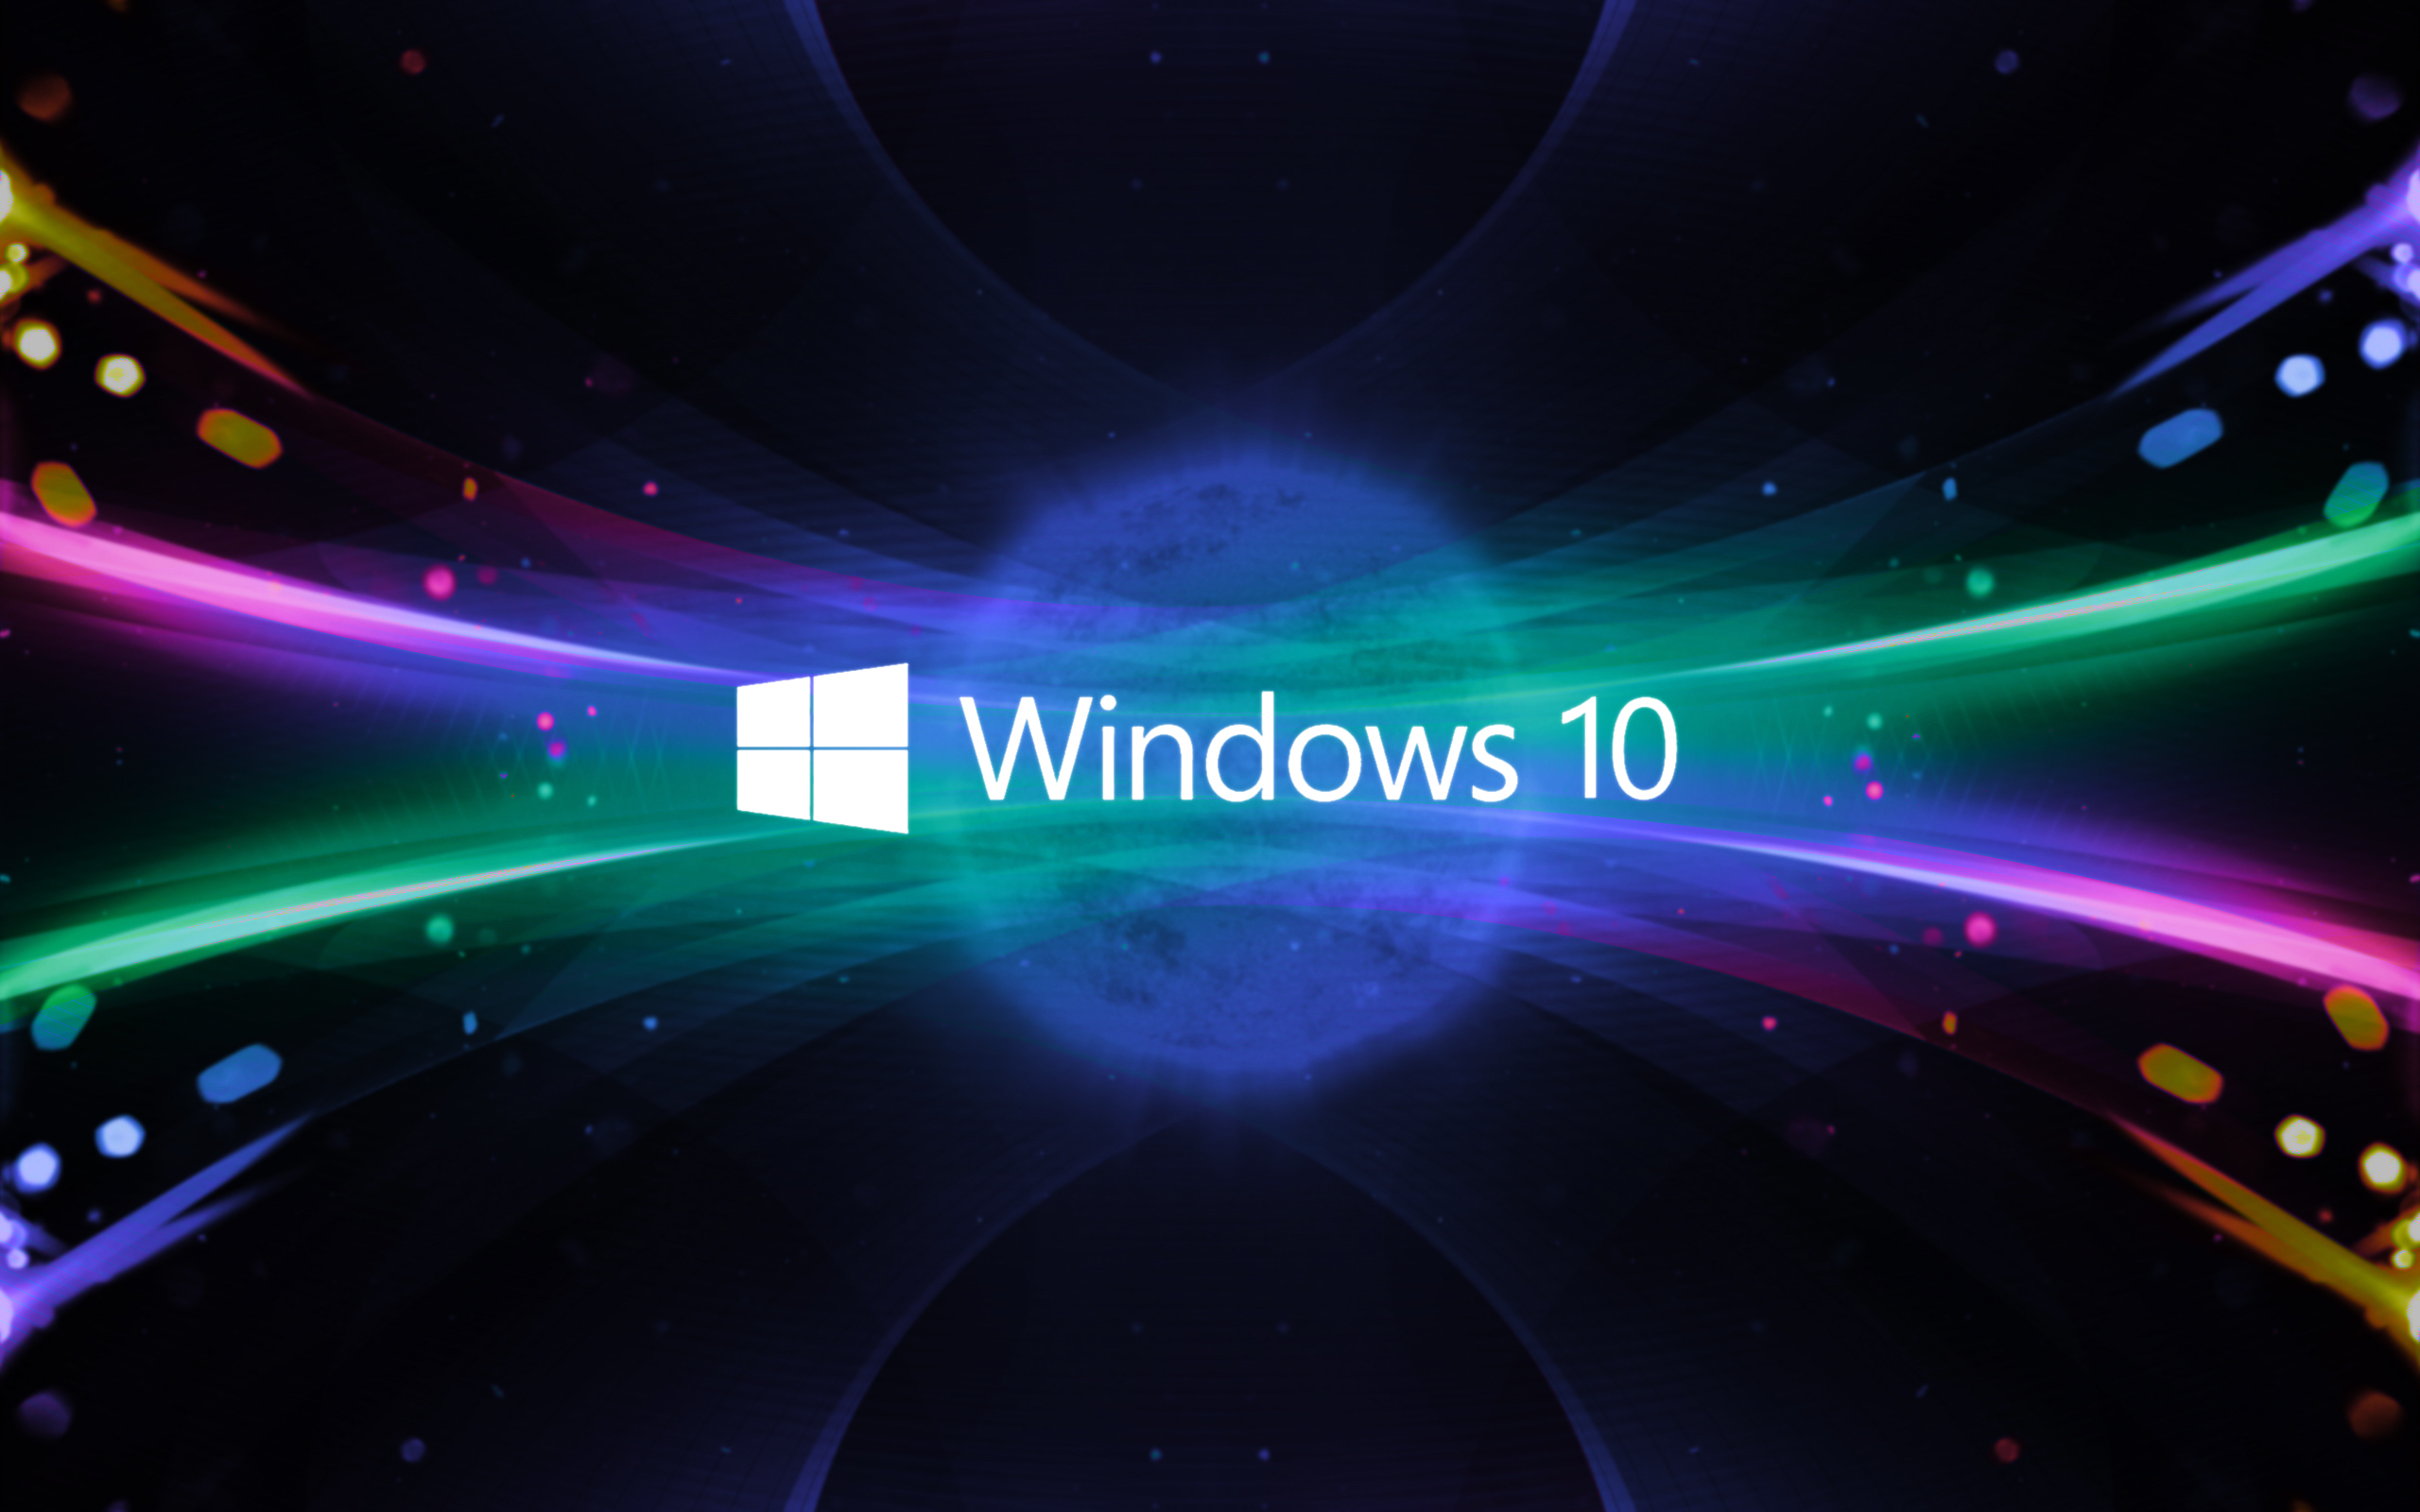 Nâng cấp Windows 10 là giải pháp hoàn hảo để bạn có được trải nghiệm tuyệt vời nhất từ hệ điều hành mới nhất. Hãy xem hình ảnh liên quan để thấy sự khác biệt và sự cải thiện của Windows